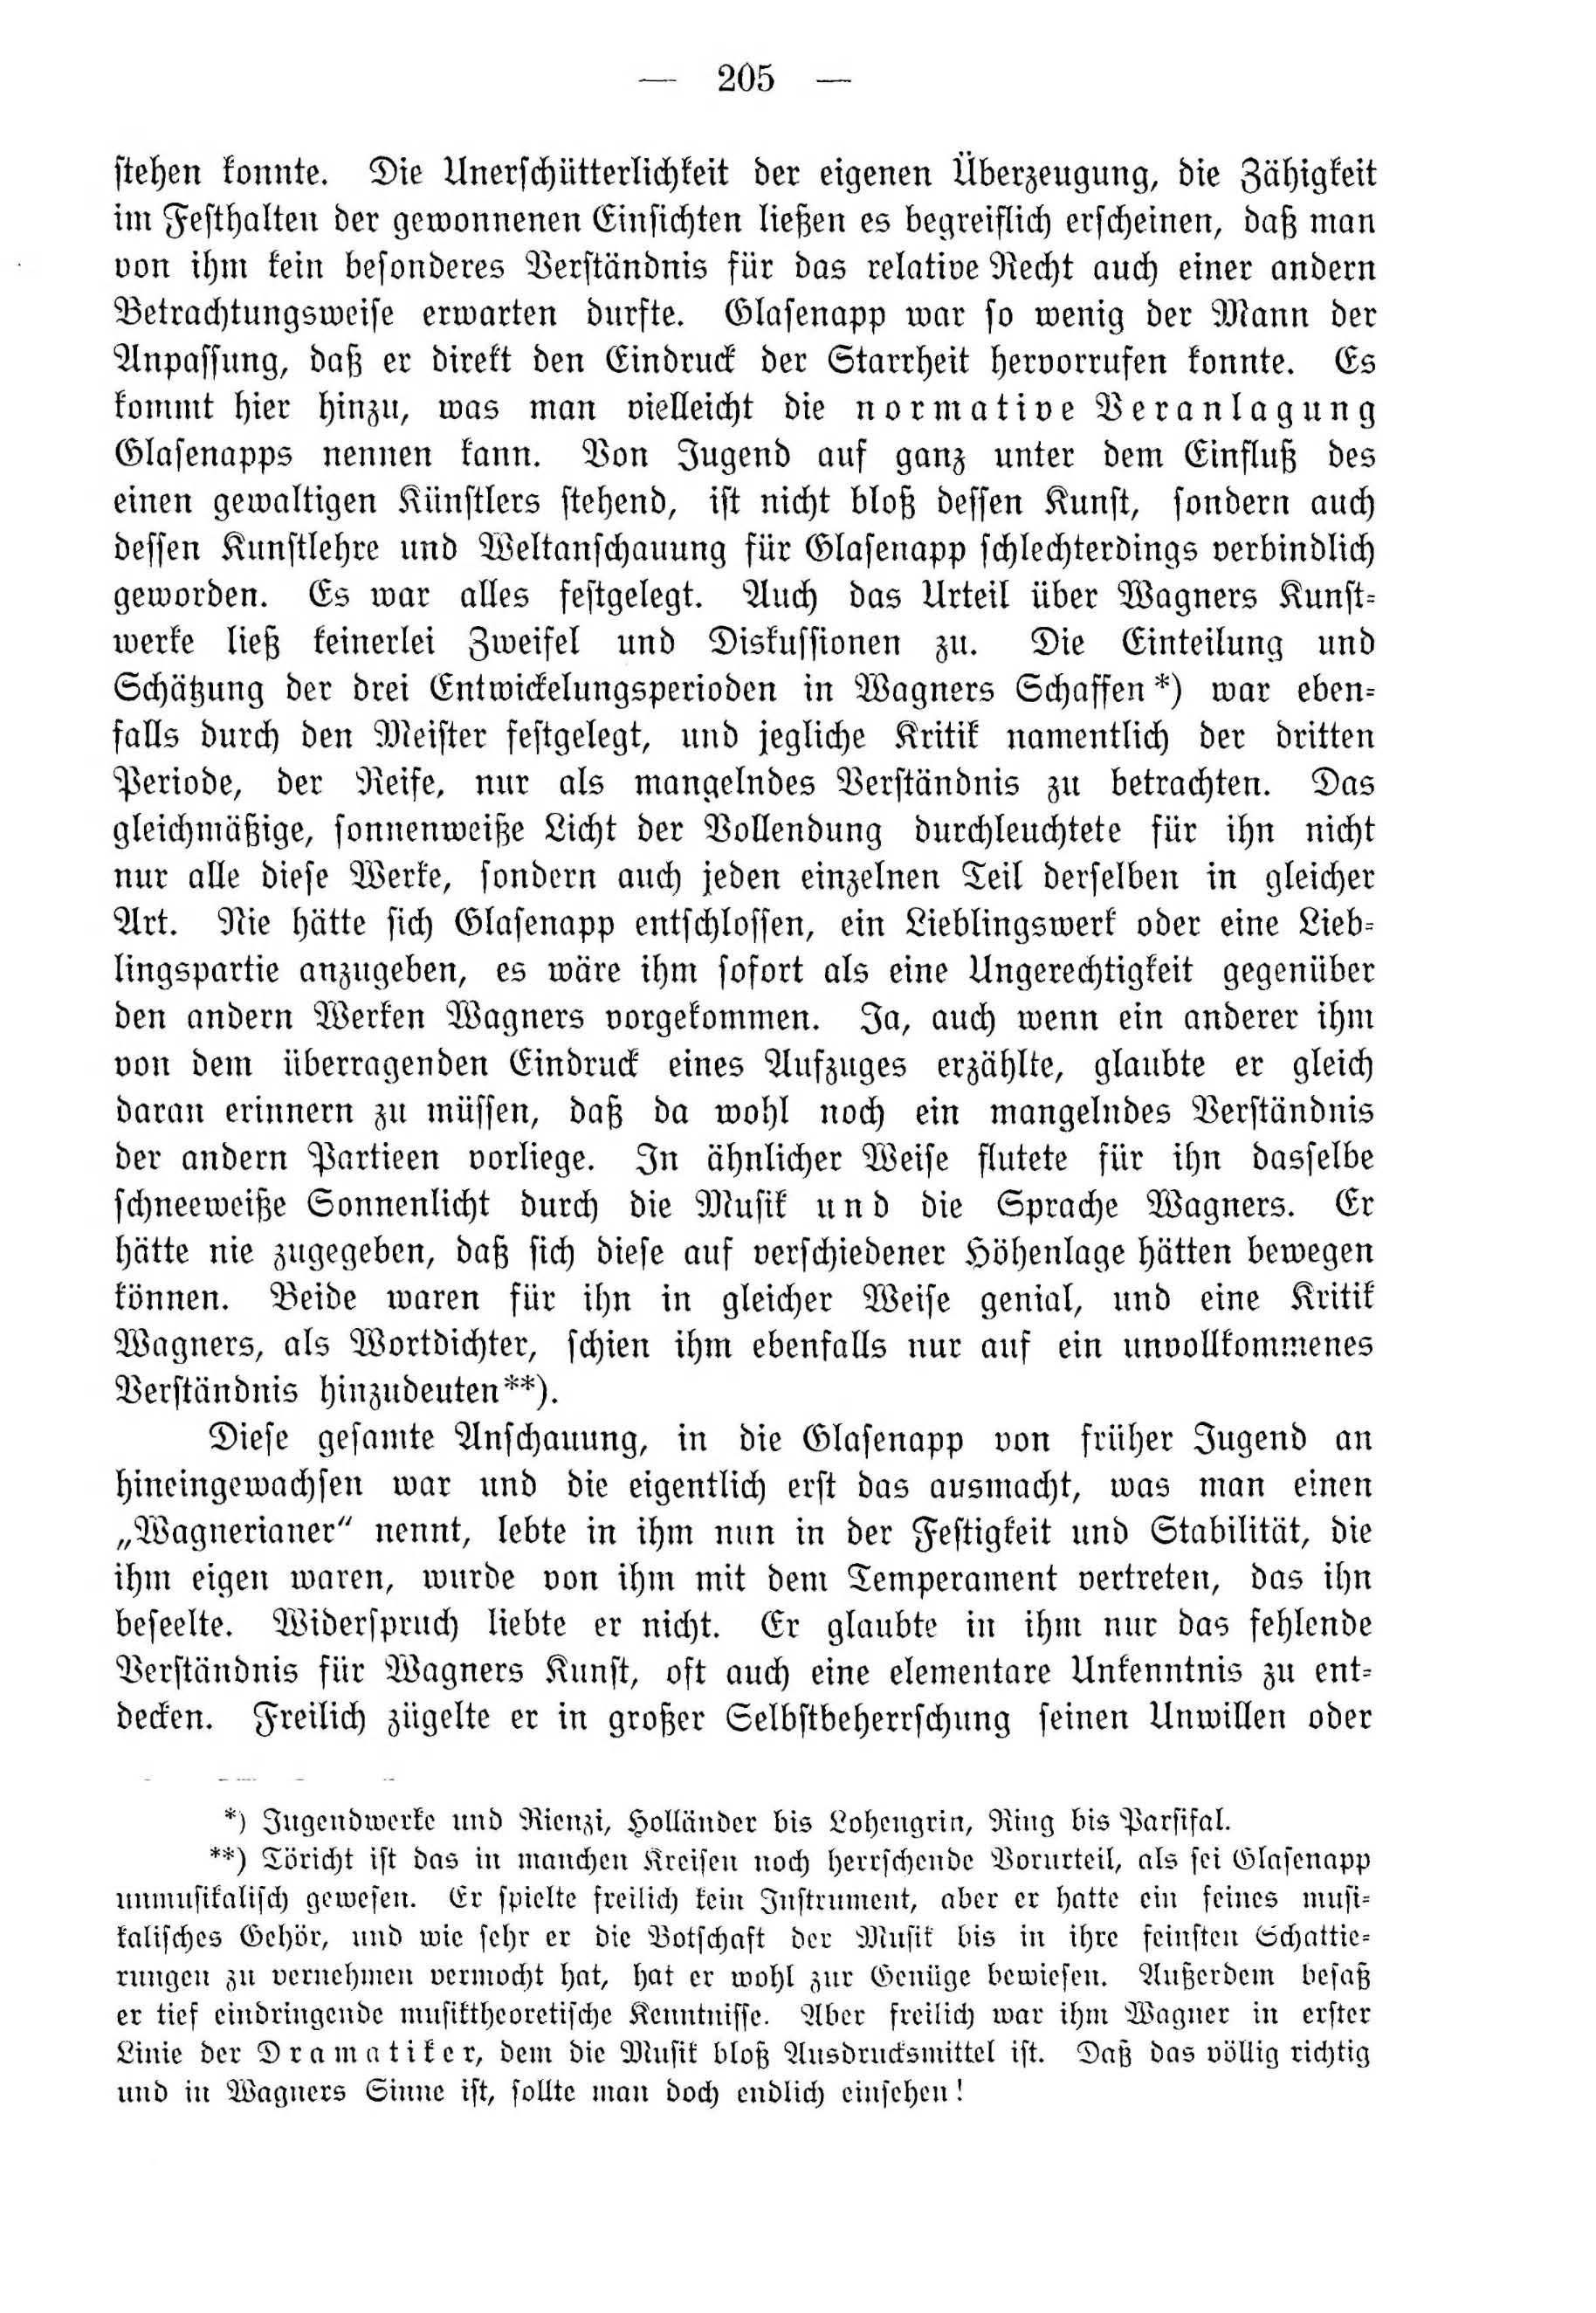 Deutsche Monatsschrift für Russland [4] (1915) | 205. (205) Основной текст